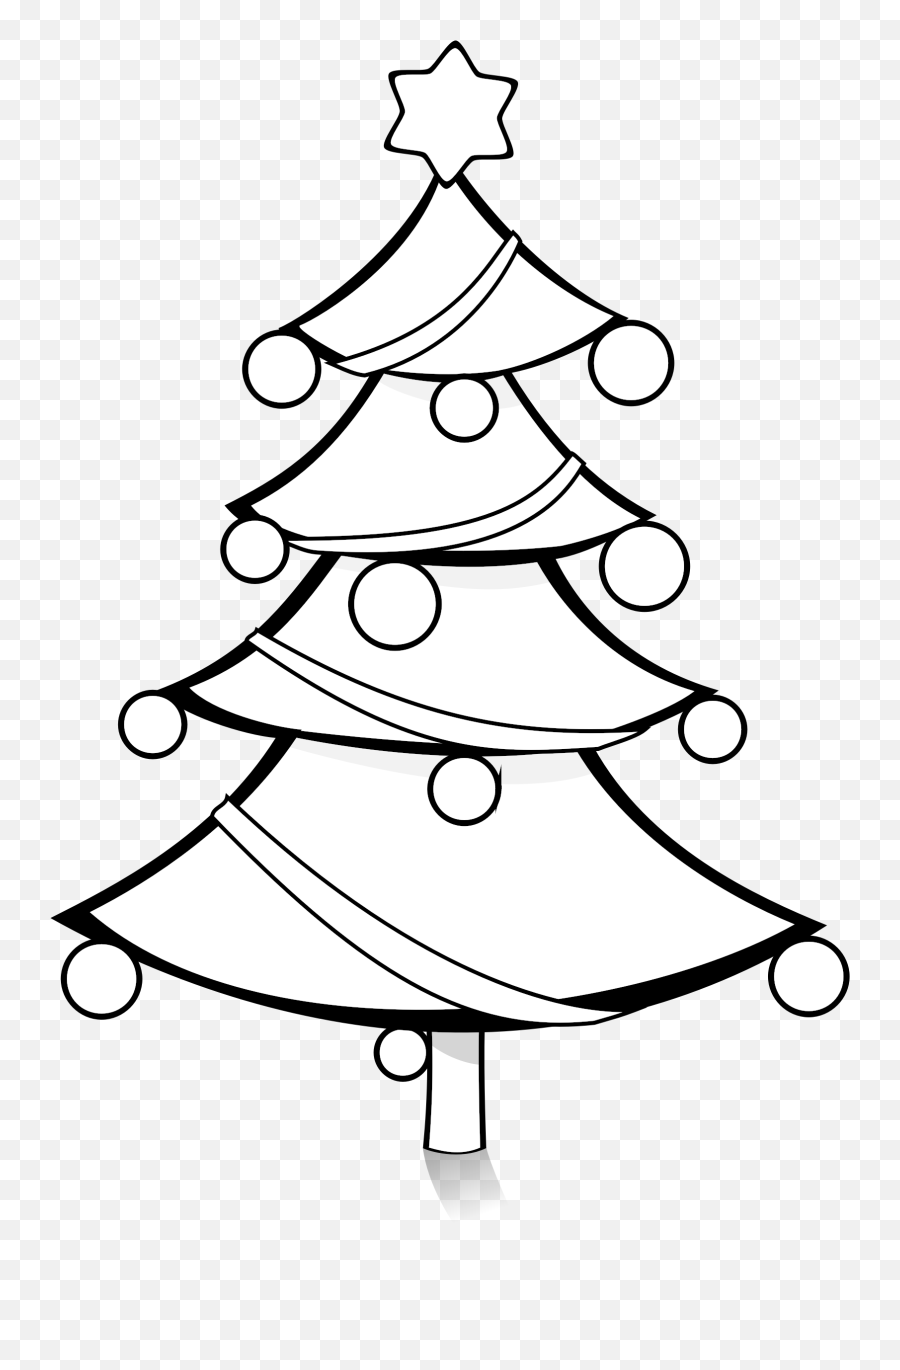 White Black And White Xmas Tree Clipart - Transparent Christmas Tree Clipart Black And White Emoji,Christmas Tree Clipart